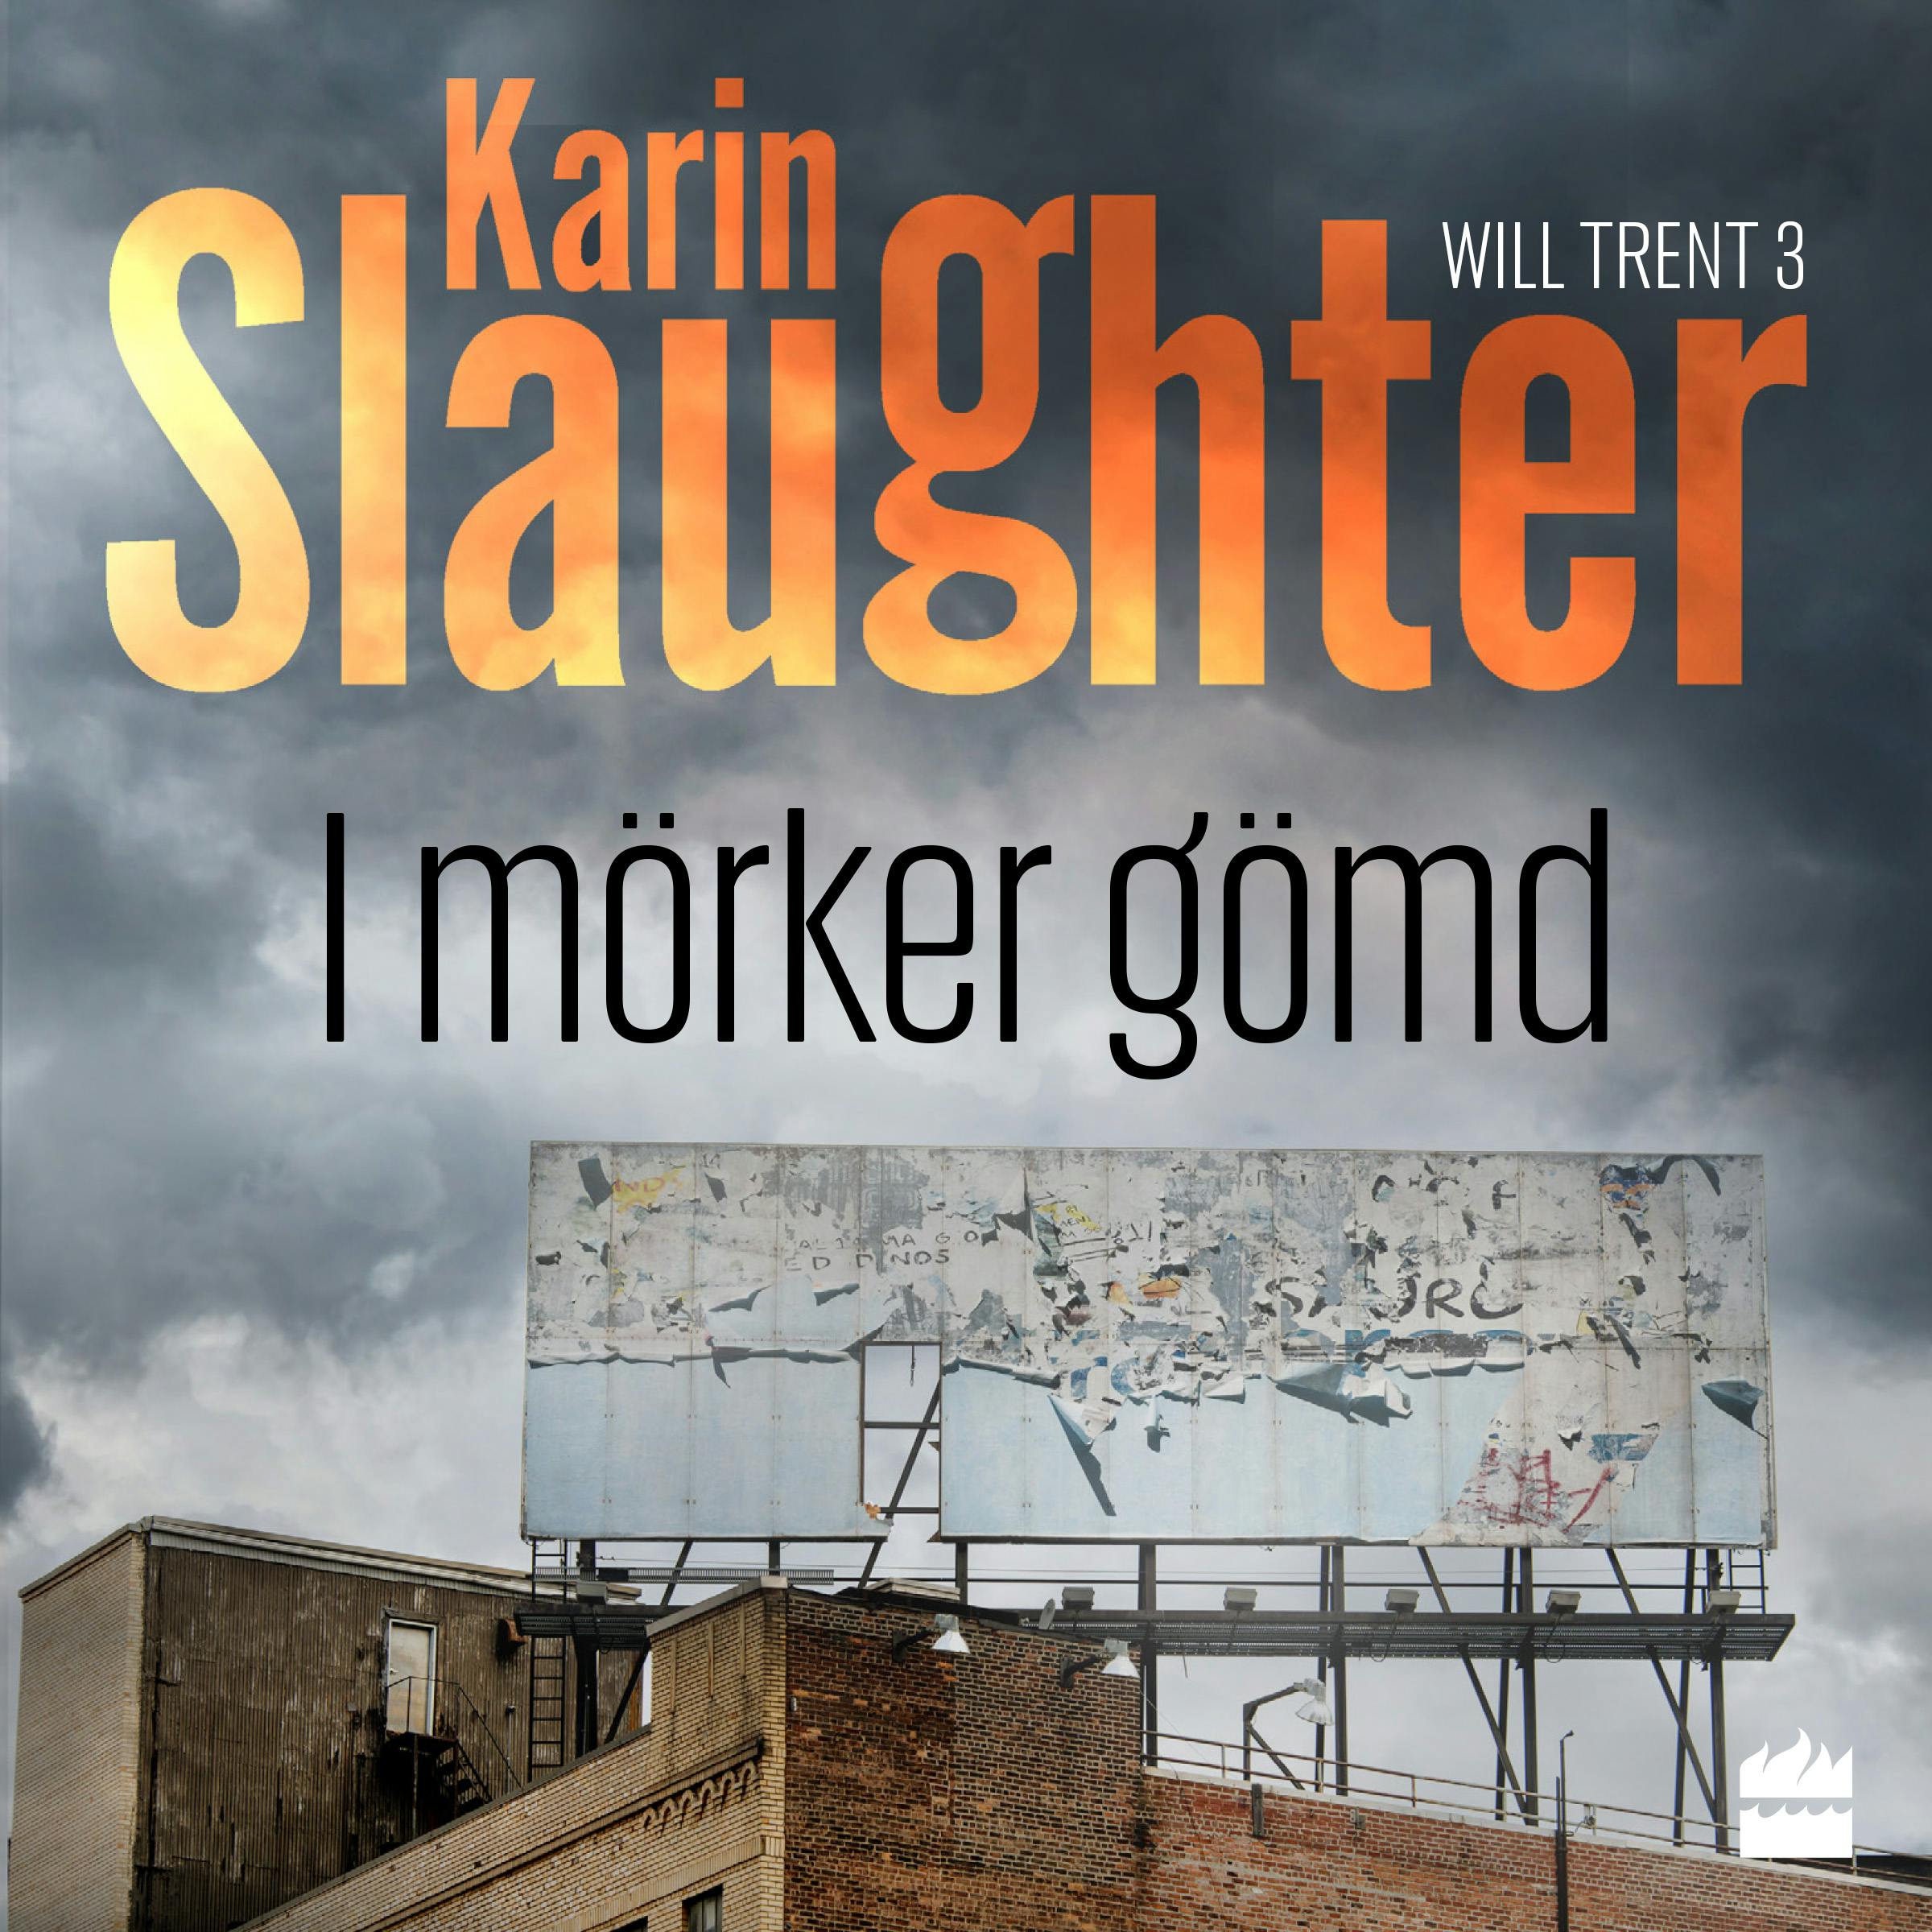 I mörker gömd - Karin Slaughter